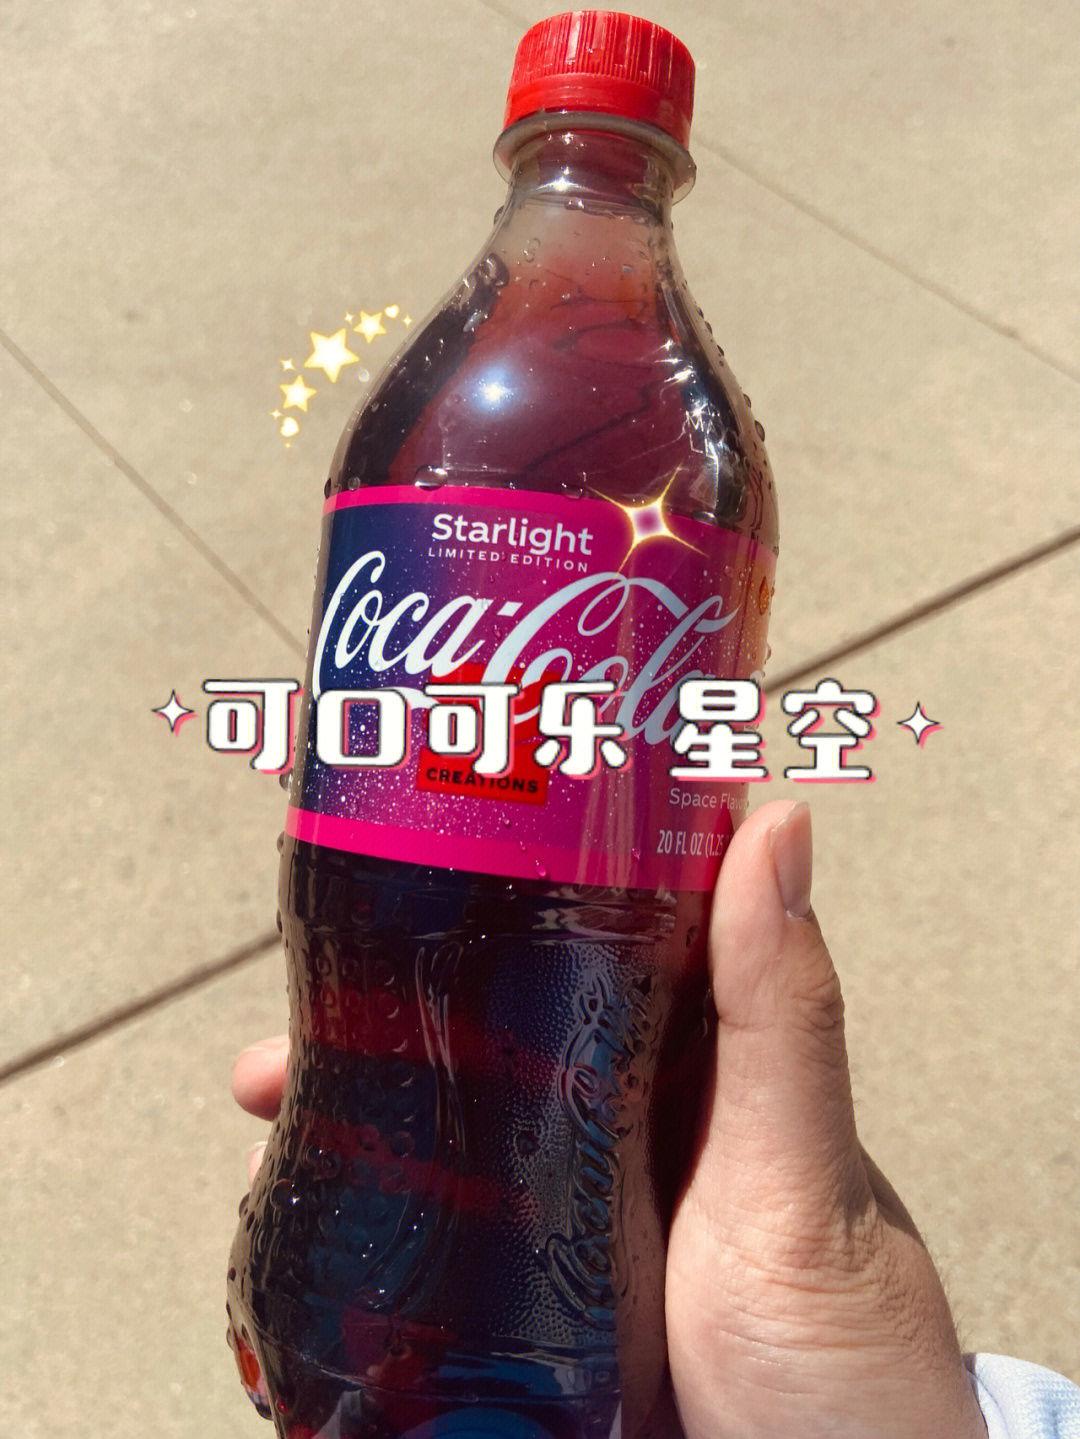 在可口可乐经典红上添加了紫色和星星的点缀,看上去真的像太空一样